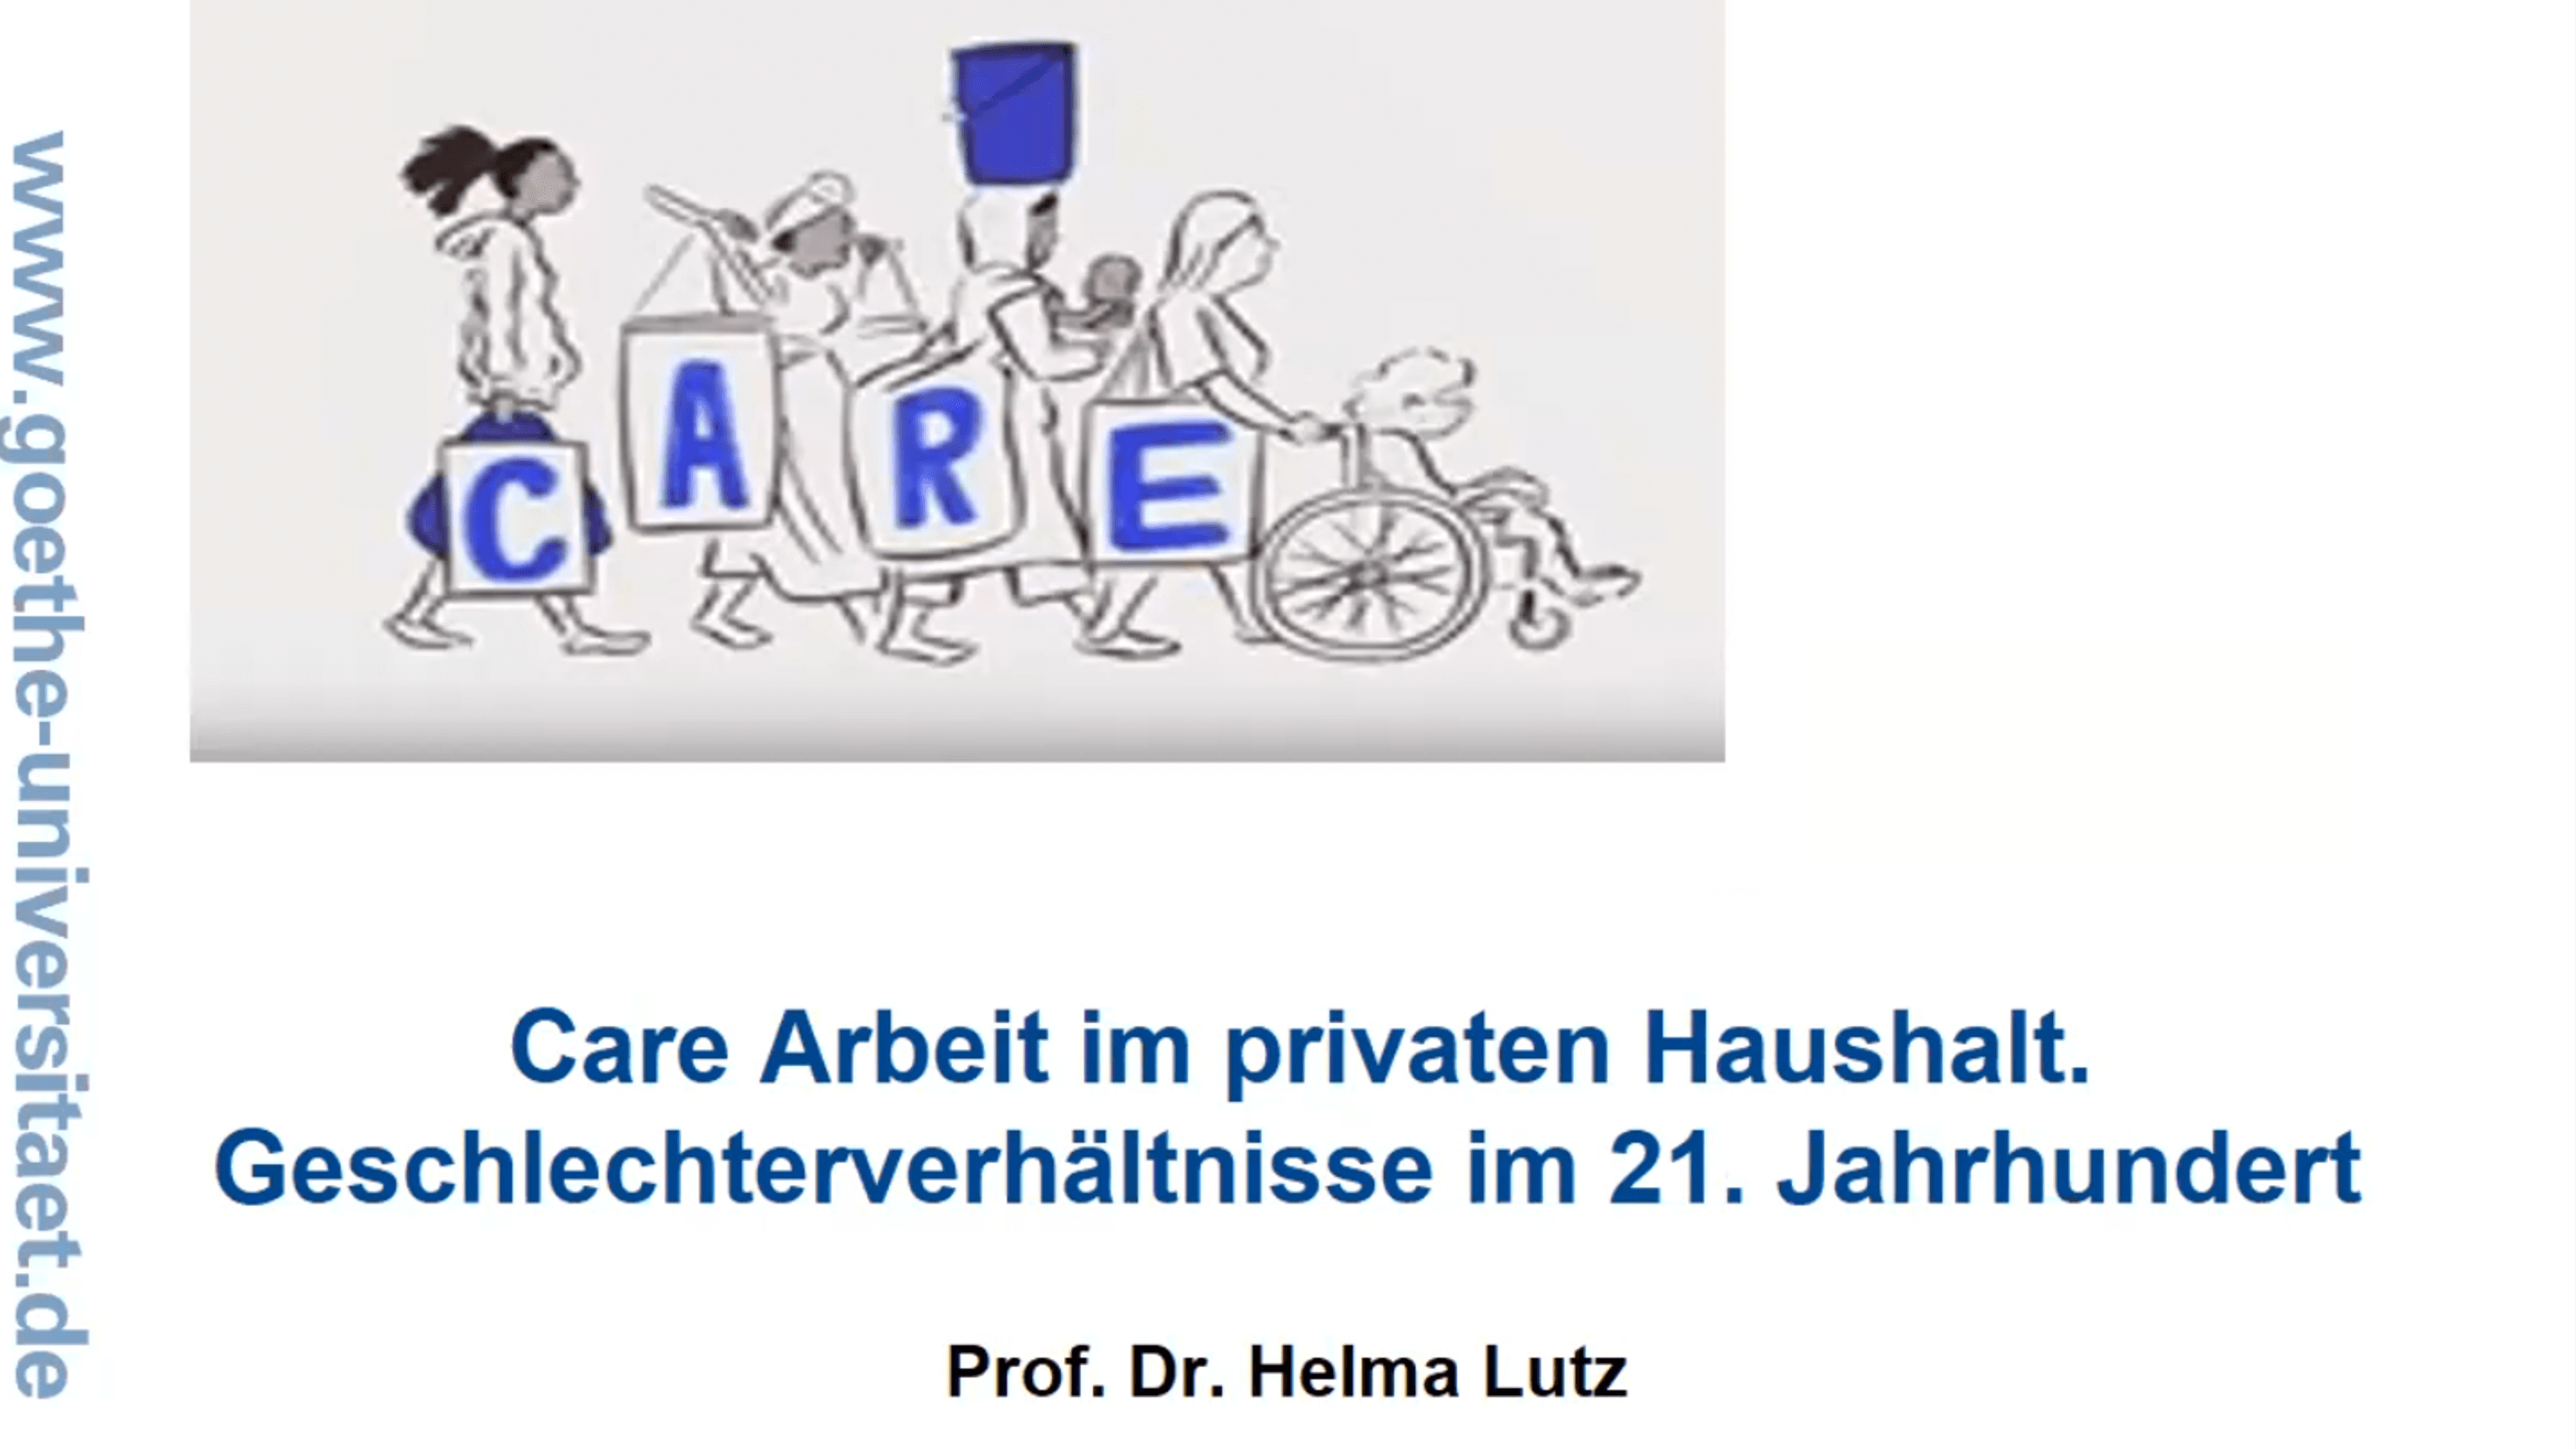 Vorschaubild: Care Arbeit im privaten Haushalt. Geschlechterverhältnisse im 21. Jahrhundert. Prof. Dr. Helma Lutz.